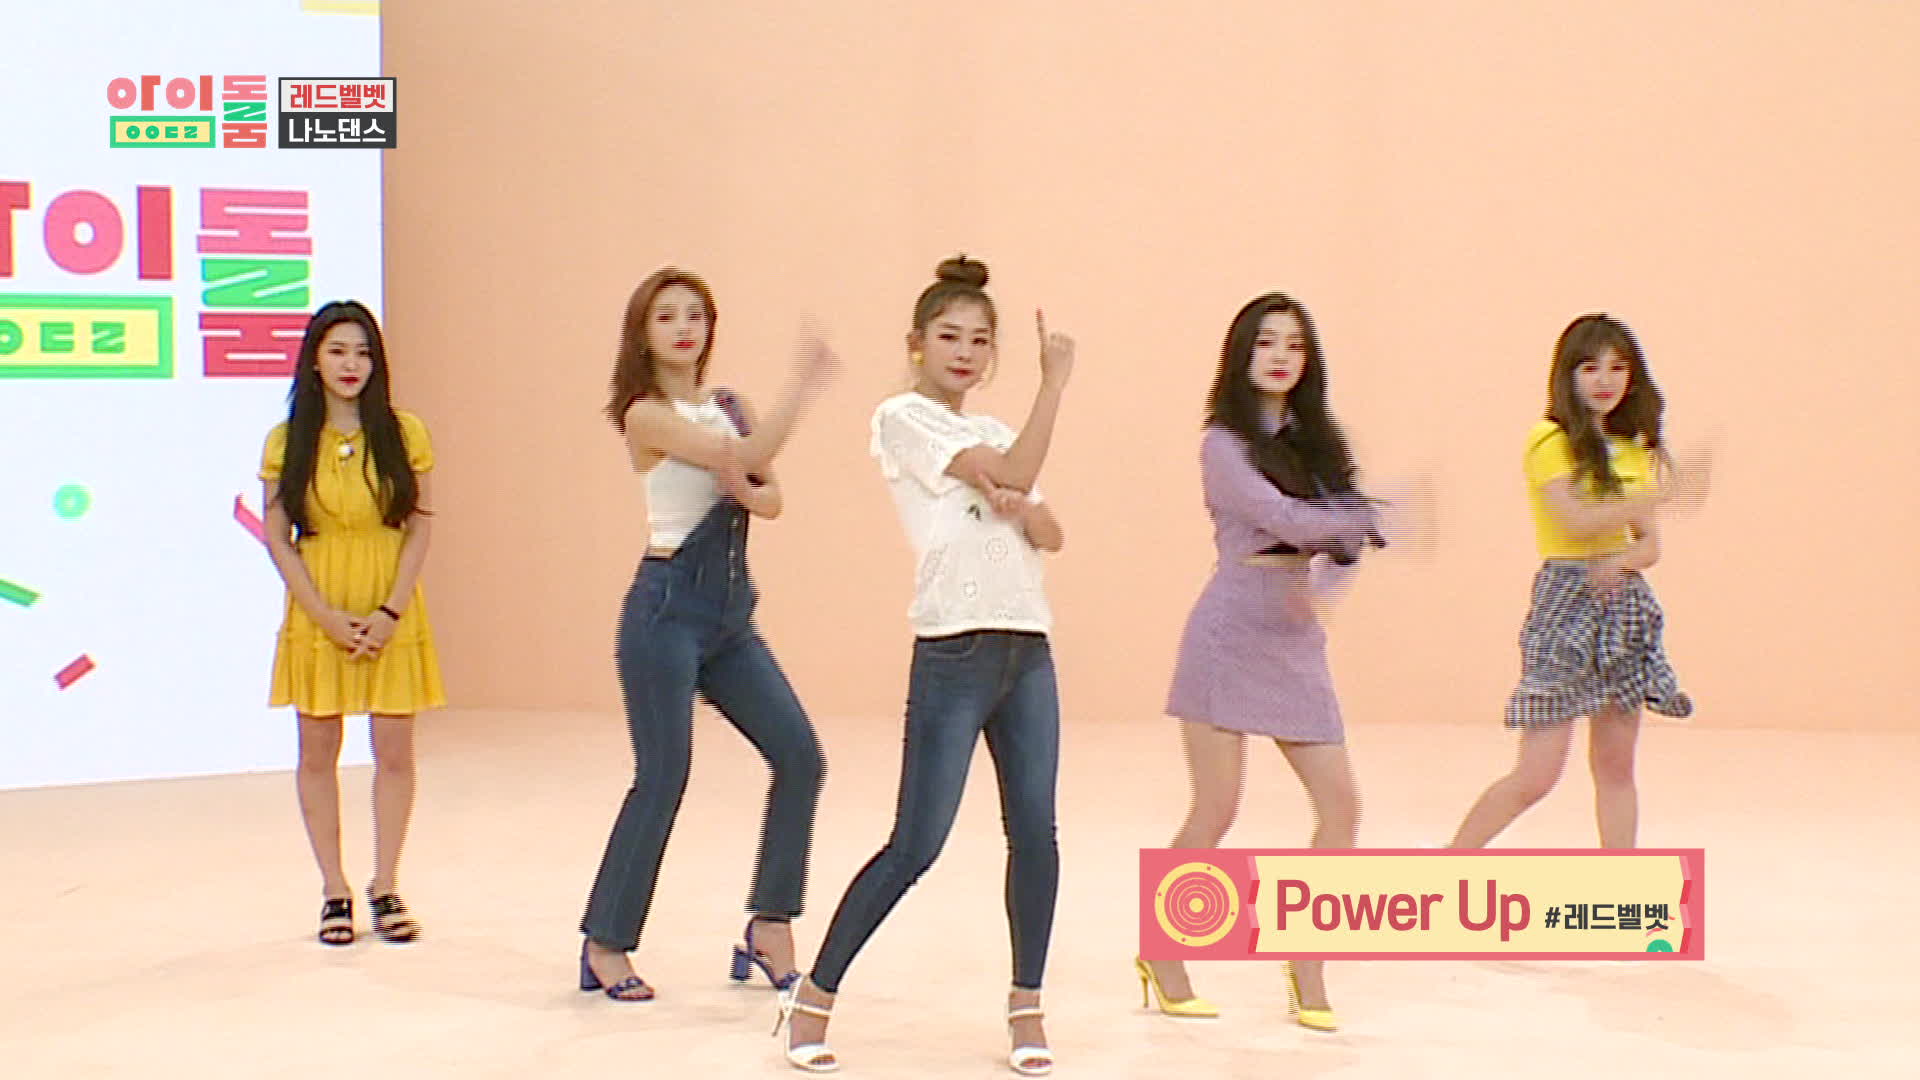 아이돌룸(IDOL ROOM) 15회 - 레드벨벳 신곡 'POWER UP' 나노댄스♪ Power Up' Nano Dance